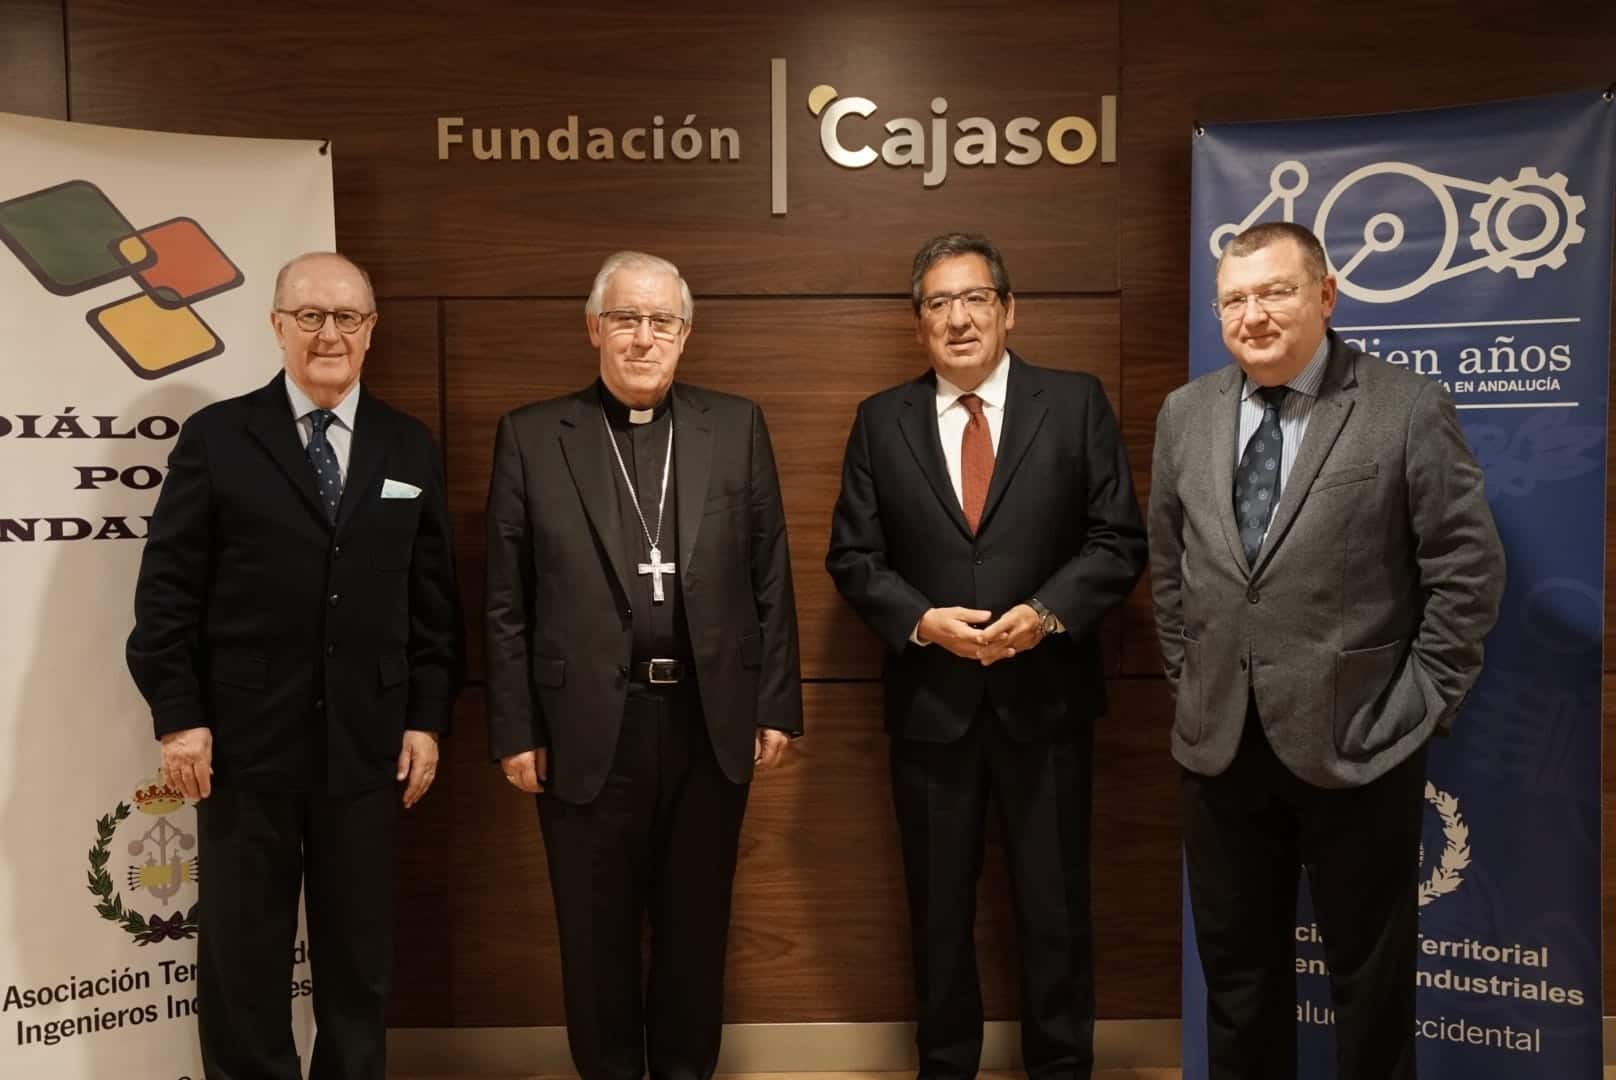 José Ángel Saiz, arzobispo de Sevilla, protagonista de los Diálogos por Andalucía en la Fundación Cajasol con Antonio Pulido Gutiérrez